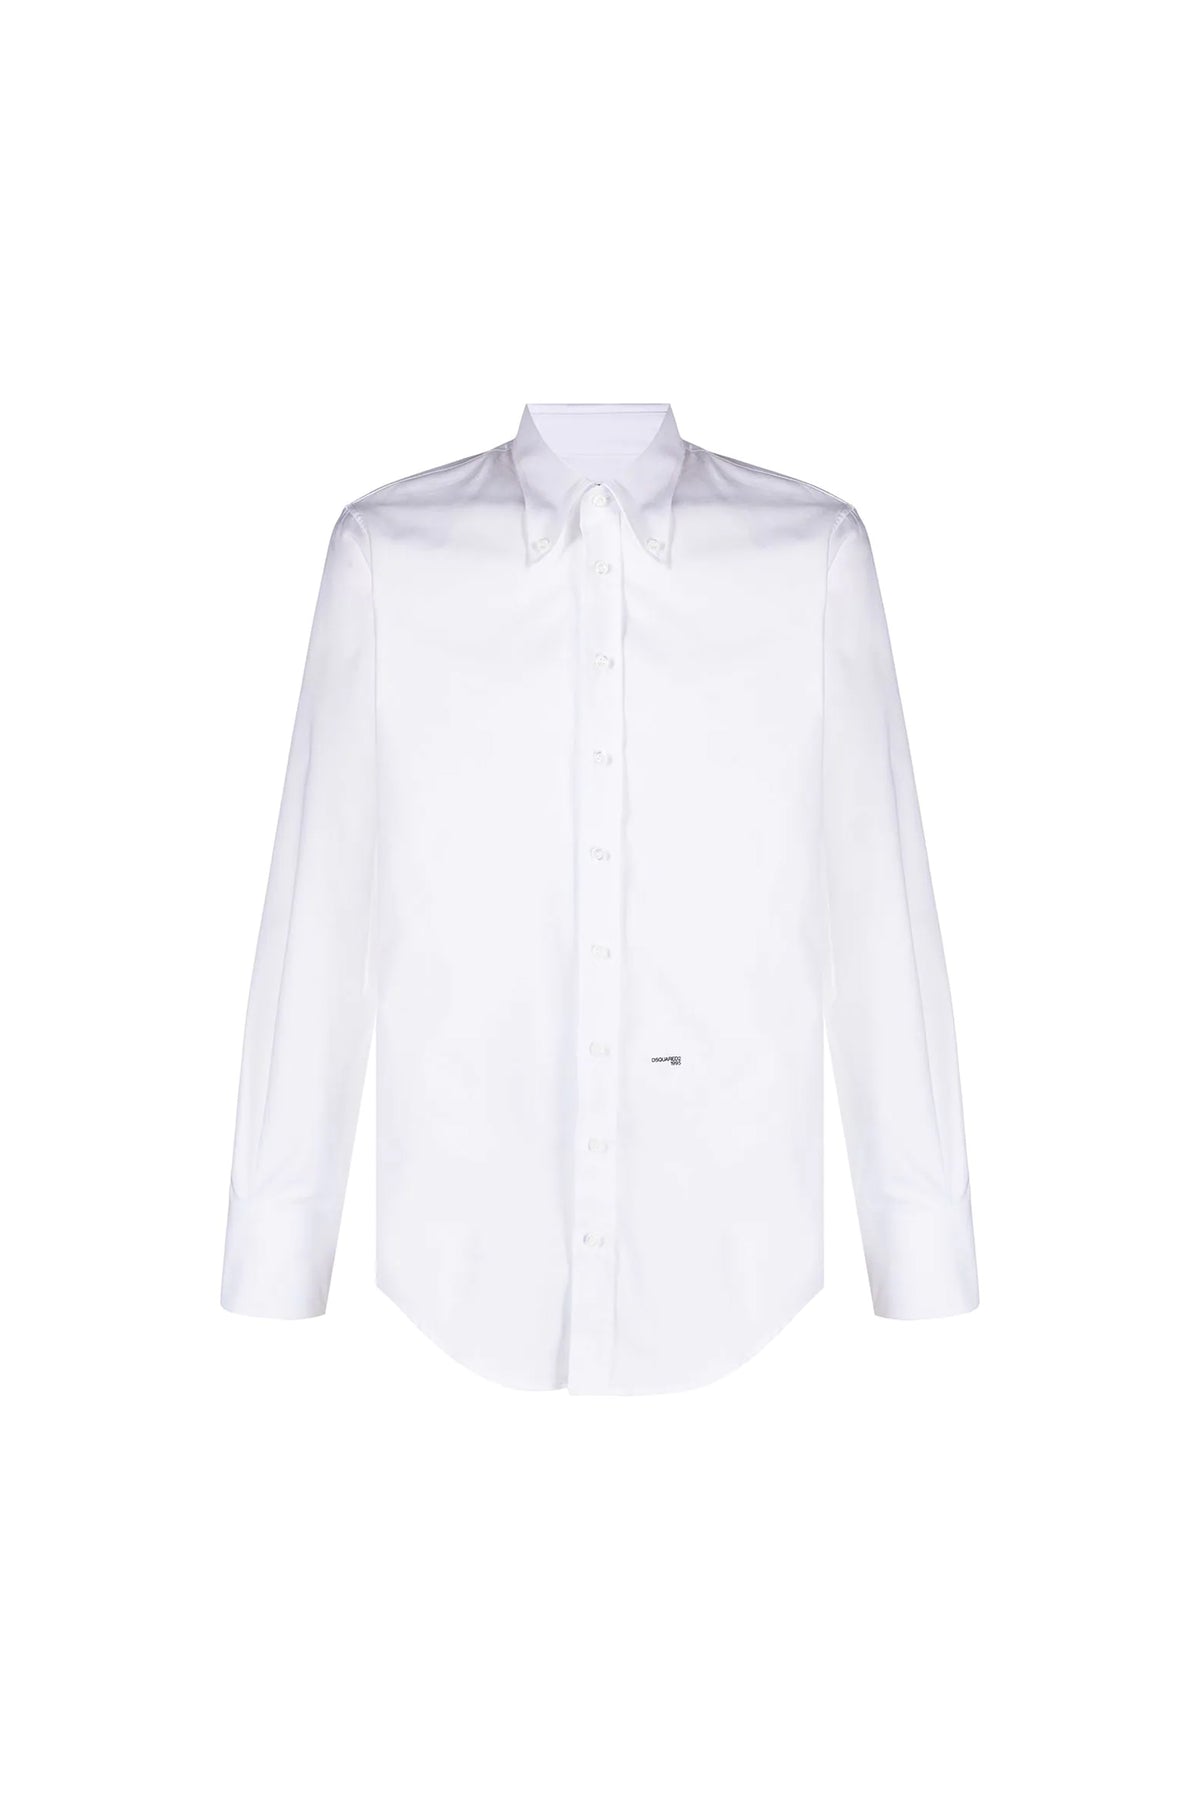 Dsquared2 button-down cotton shirt